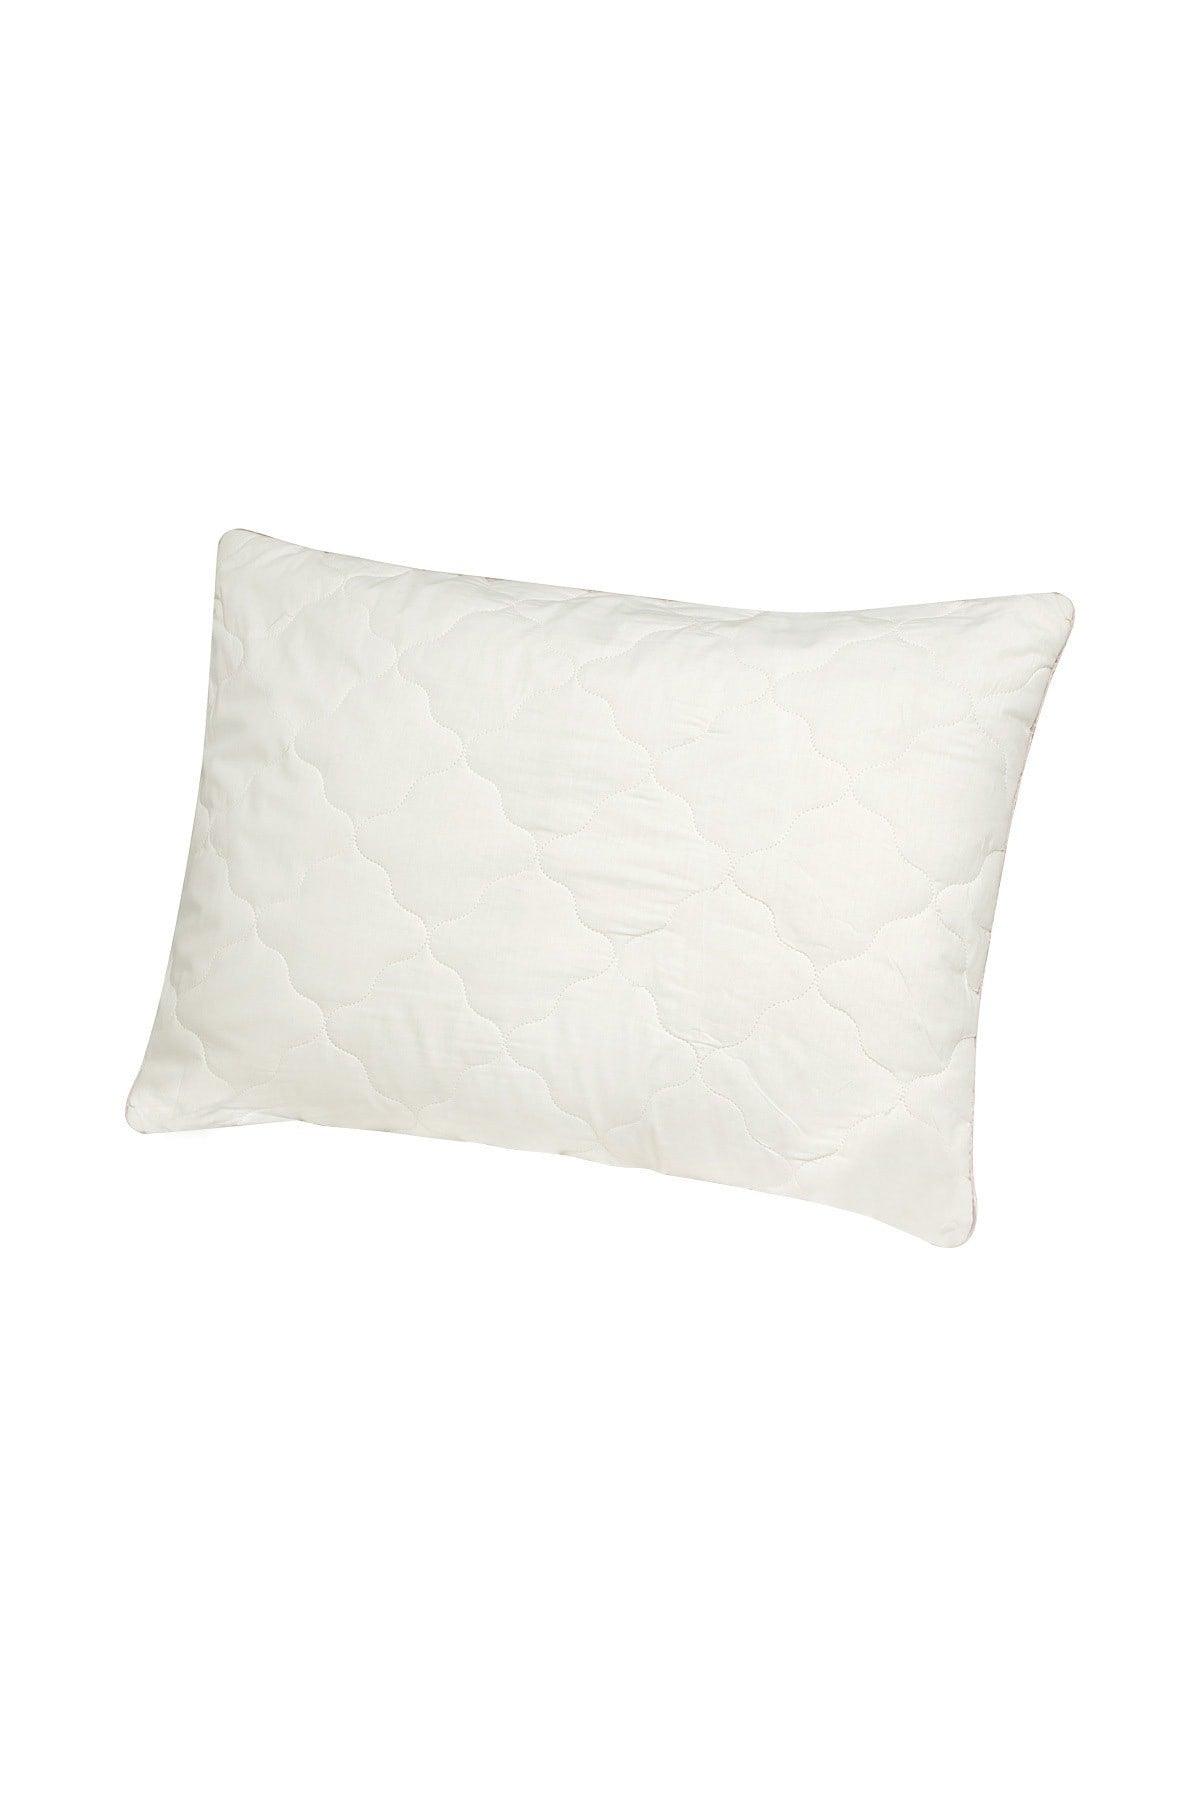 Superwashed Wool Pillow - Swordslife